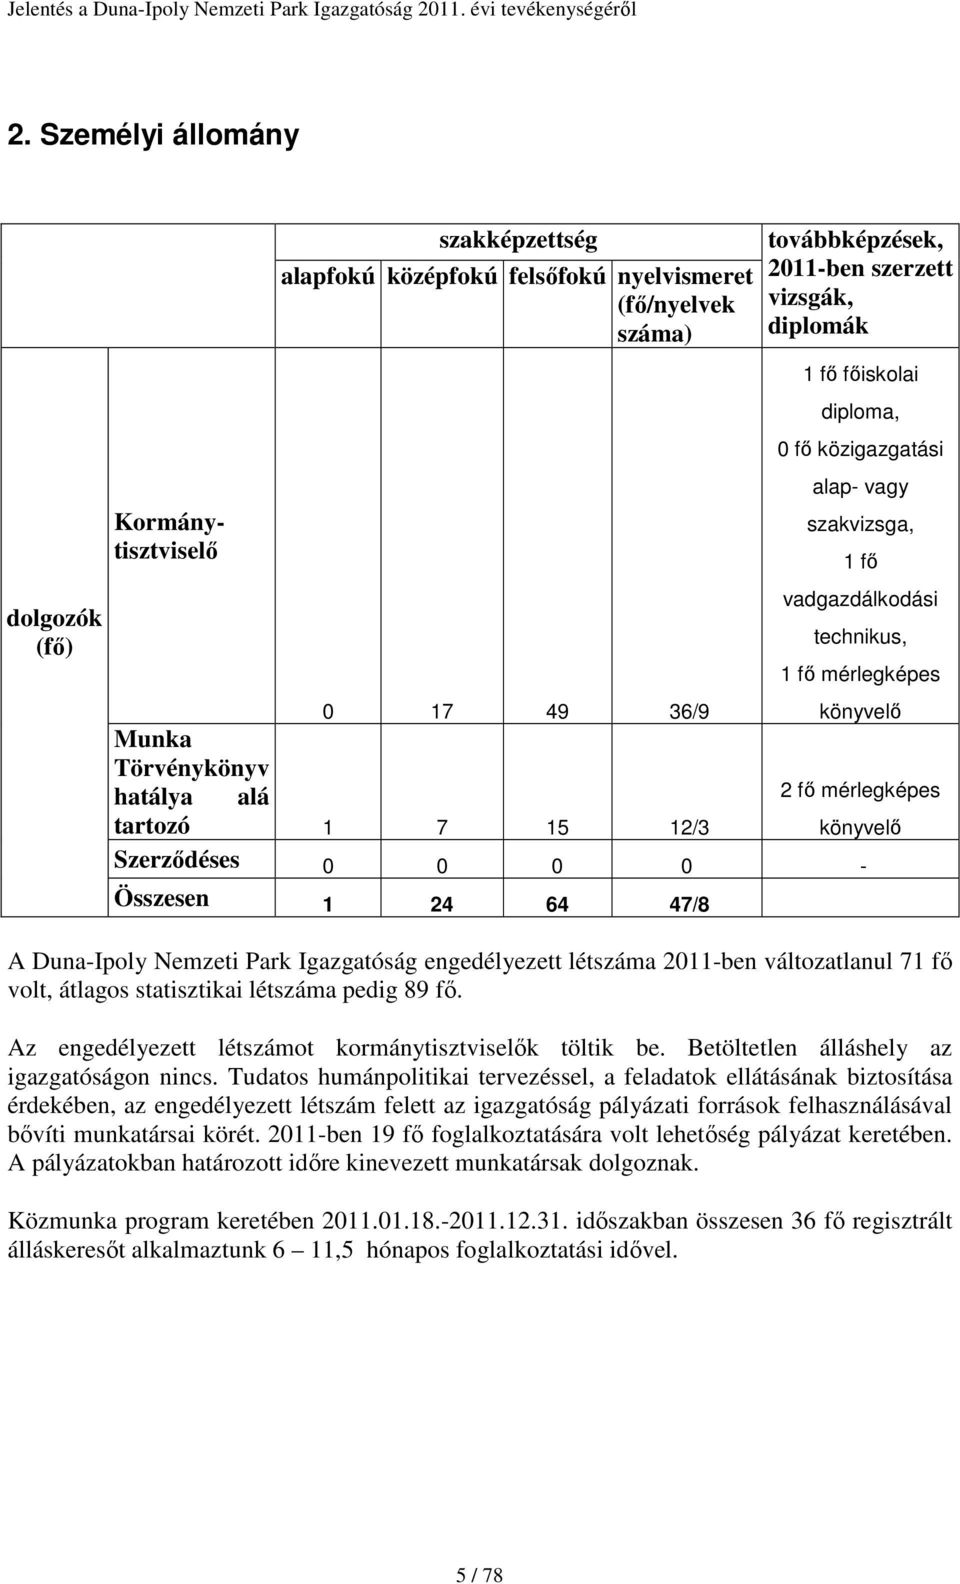 könyvelő Szerződéses 0 0 0 0 - Összesen 1 24 64 47/8 A Duna-Ipoly Nemzeti Park Igazgatóság engedélyezett létszáma 2011-ben változatlanul 71 fő volt, átlagos statisztikai létszáma pedig 89 fő.